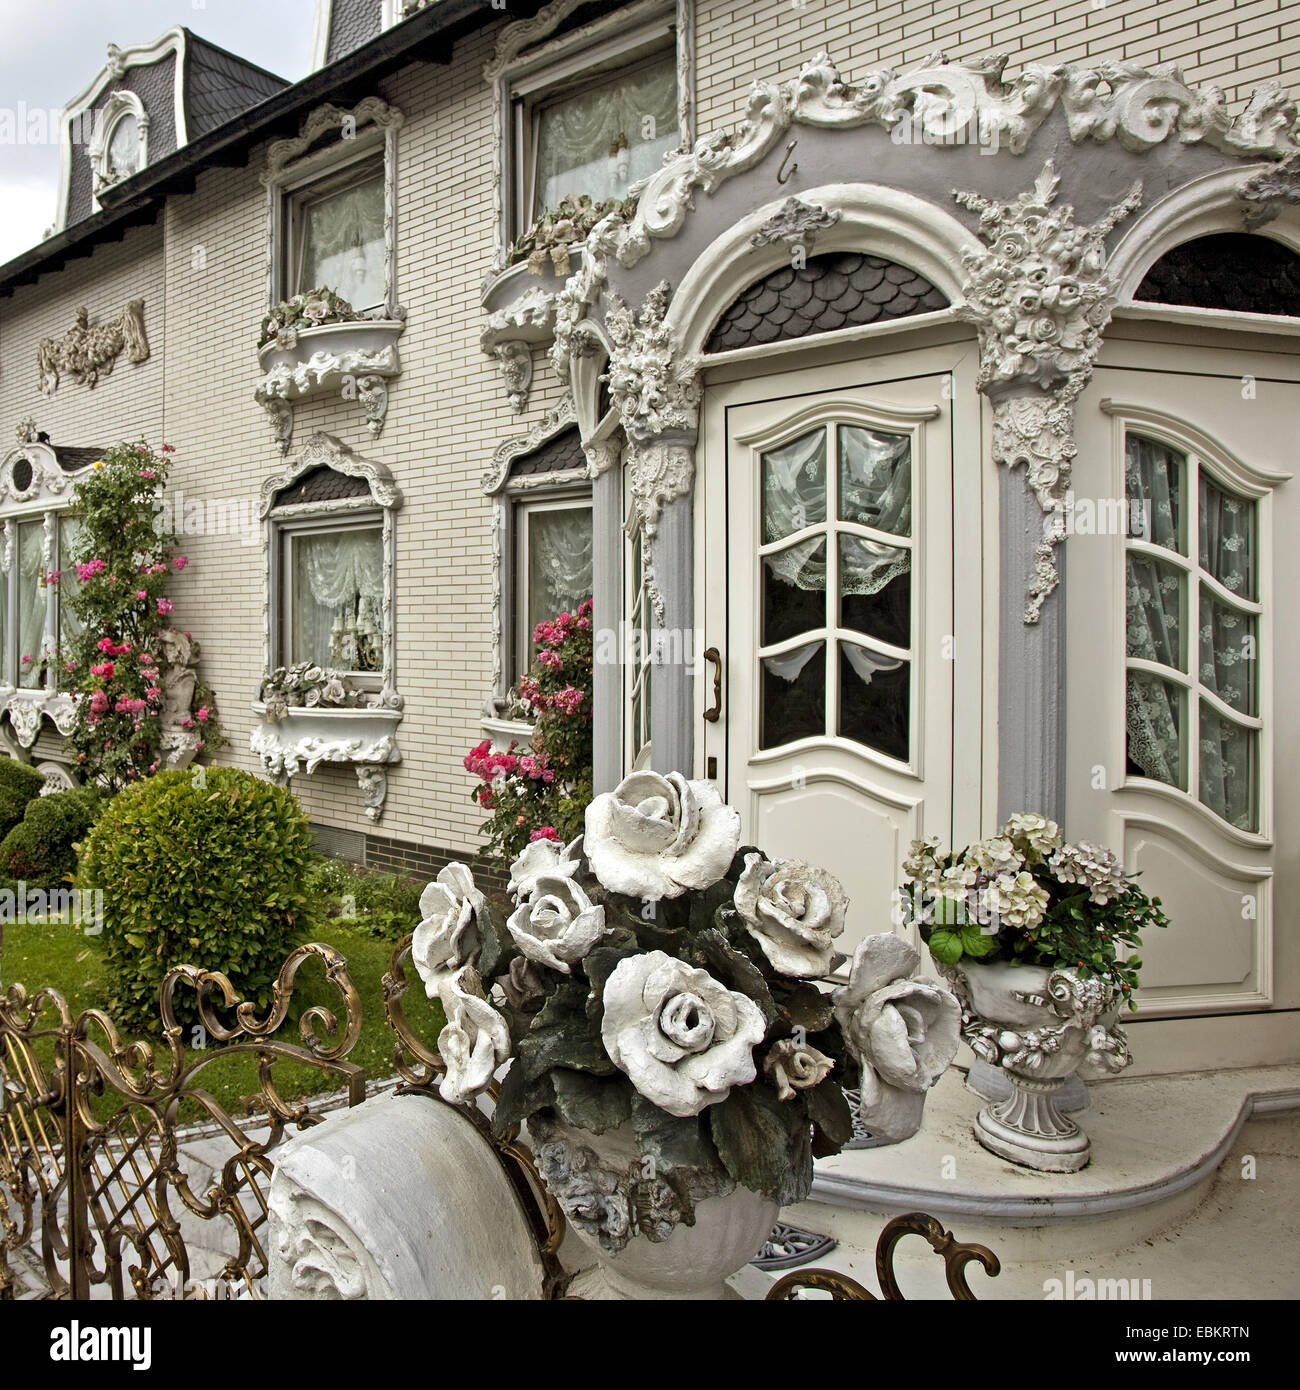 Maison de ville dans le style baroque de Gelsenkirchen, Allemagne, Rhénanie du Nord-Westphalie, région de la Ruhr, Bochum Banque D'Images